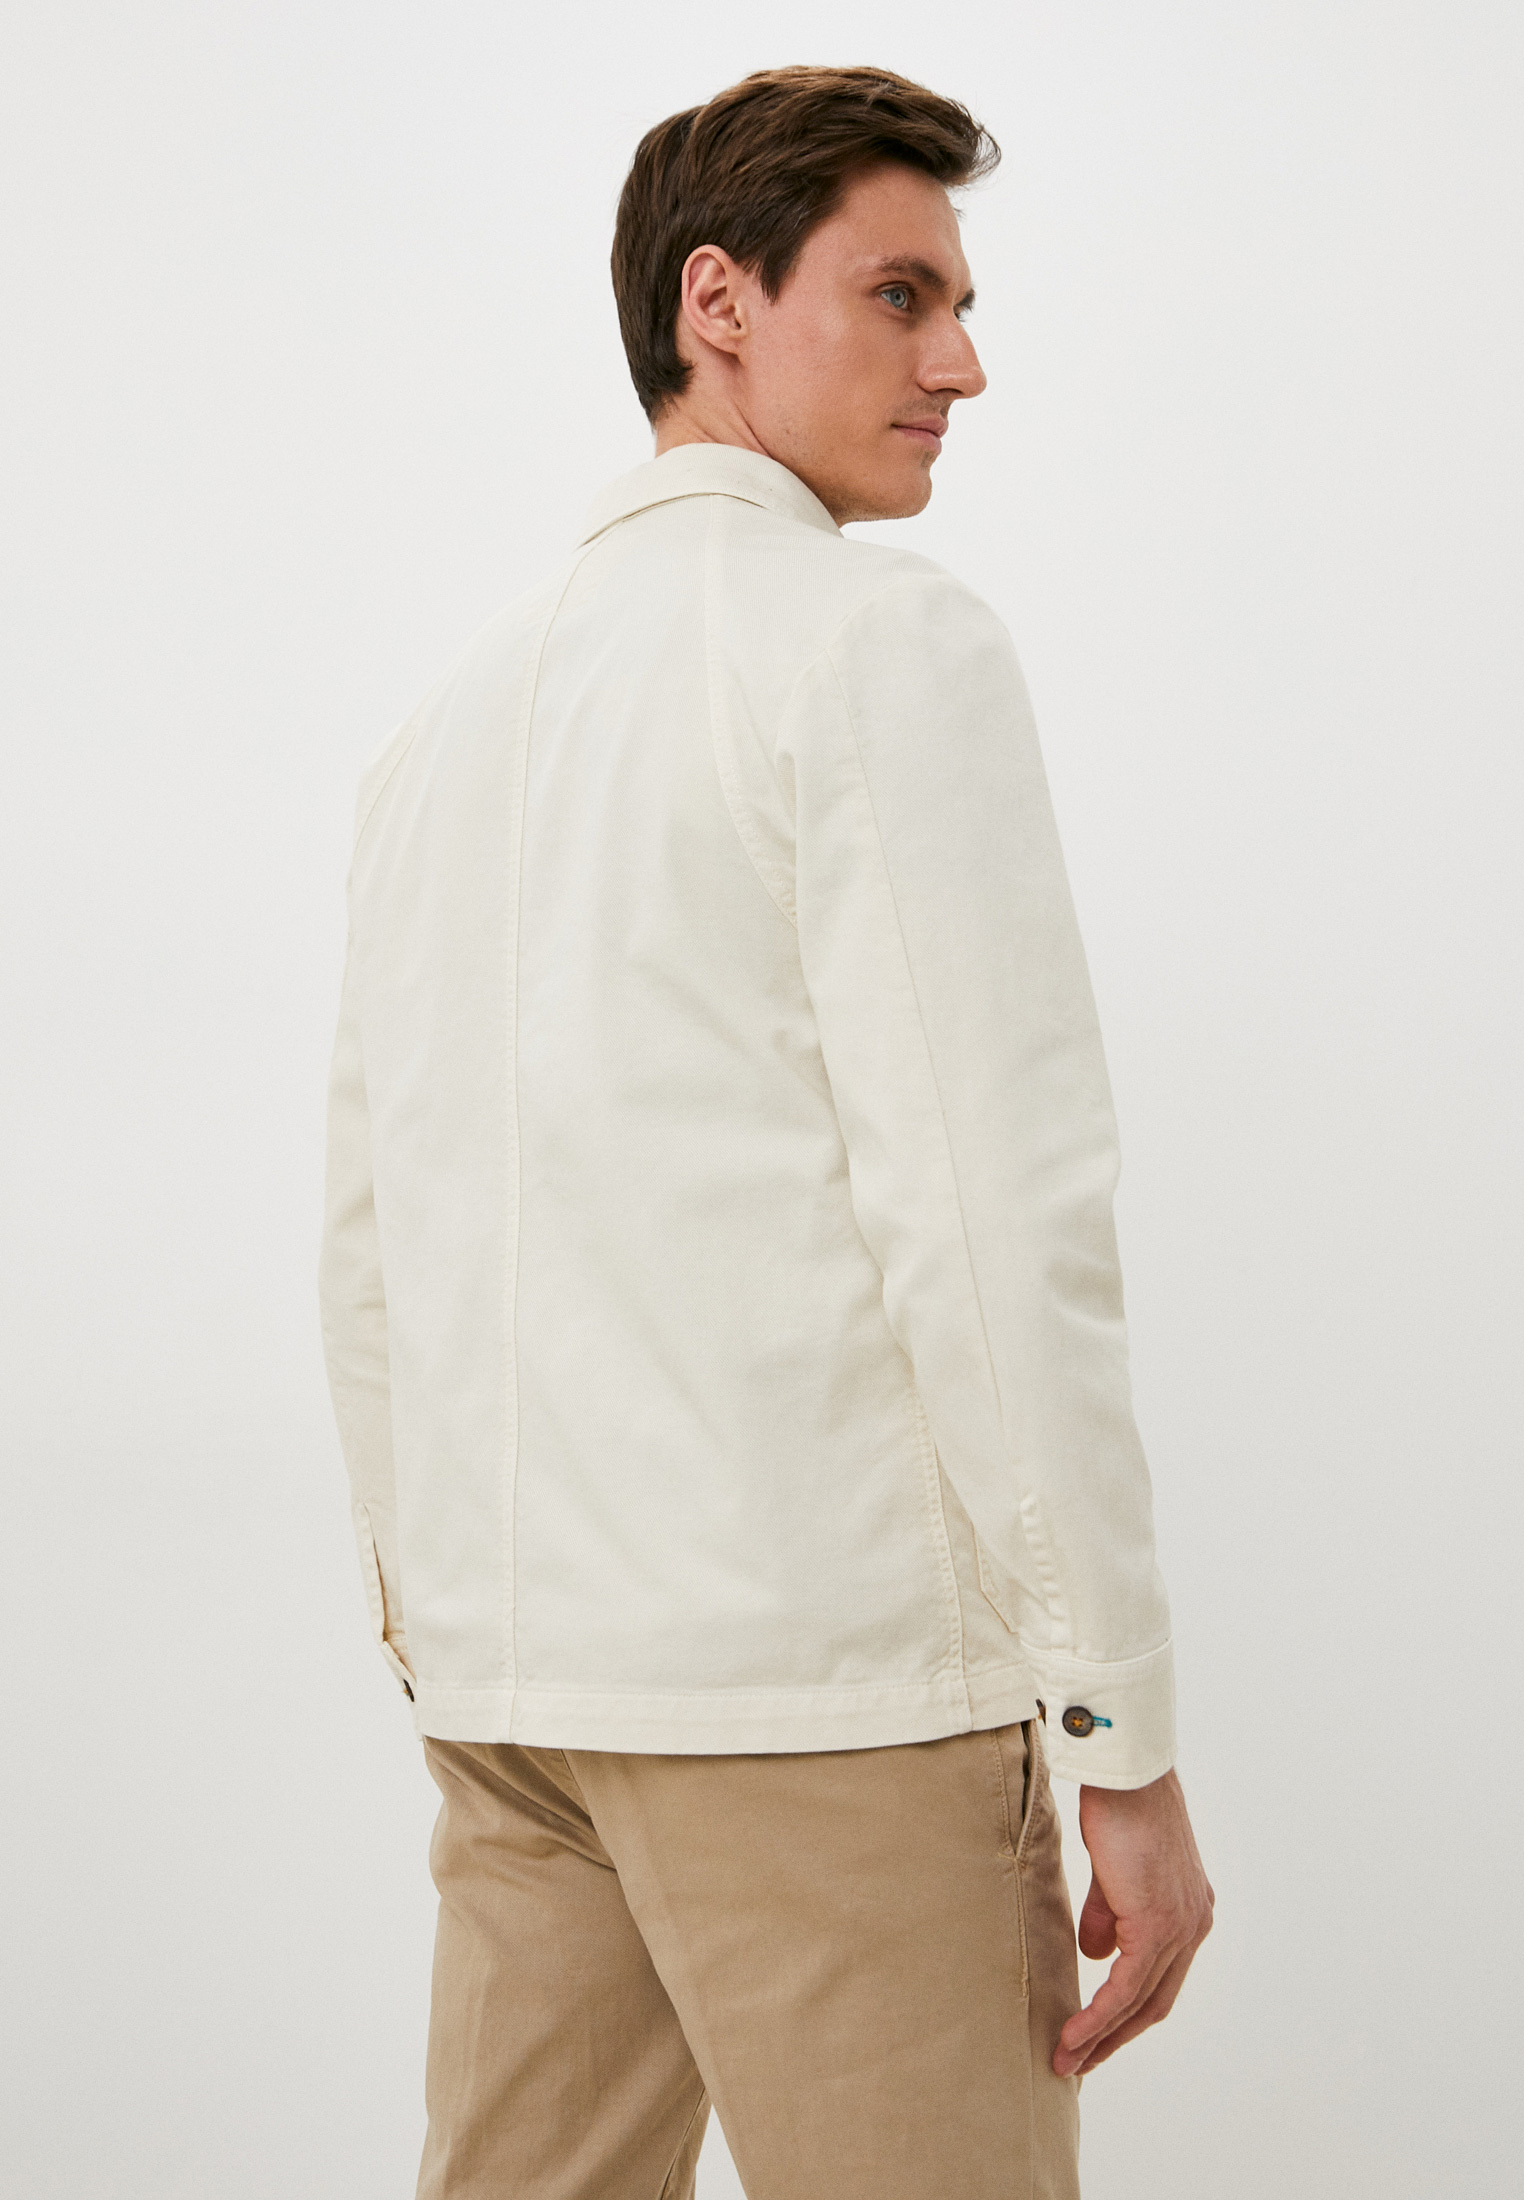 Джинсовая куртка Berna M 22020124: изображение 3